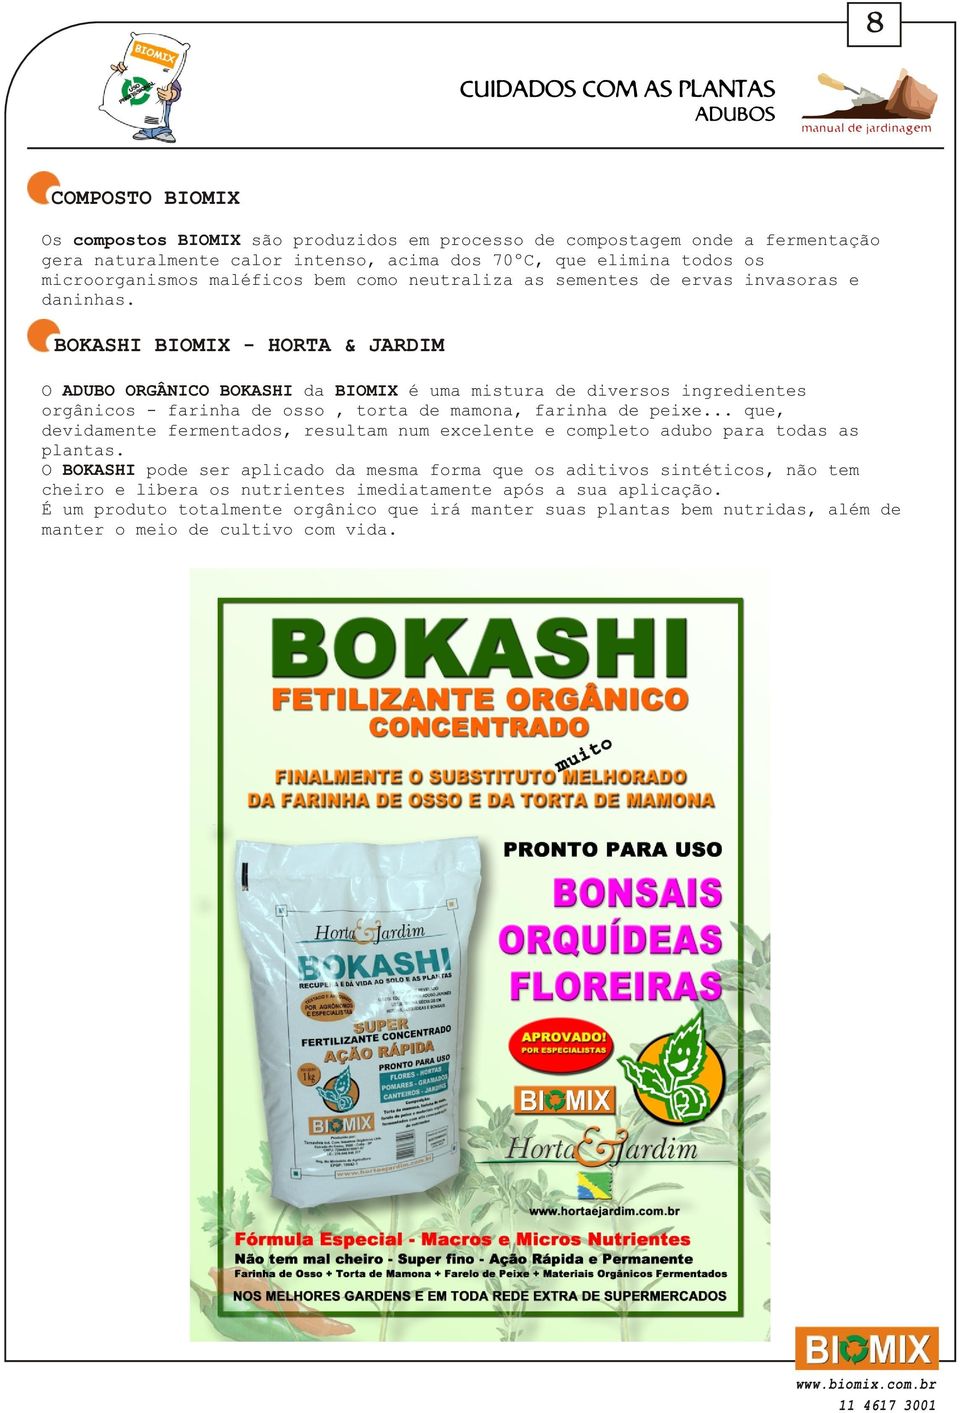 BOKASHI BIOMIX - HORTA & JARDIM O ADUBO ORGÂNICO BOKASHI da BIOMIX é uma mistura de diversos ingredientes orgânicos - farinha de osso, torta de mamona, farinha de peixe.